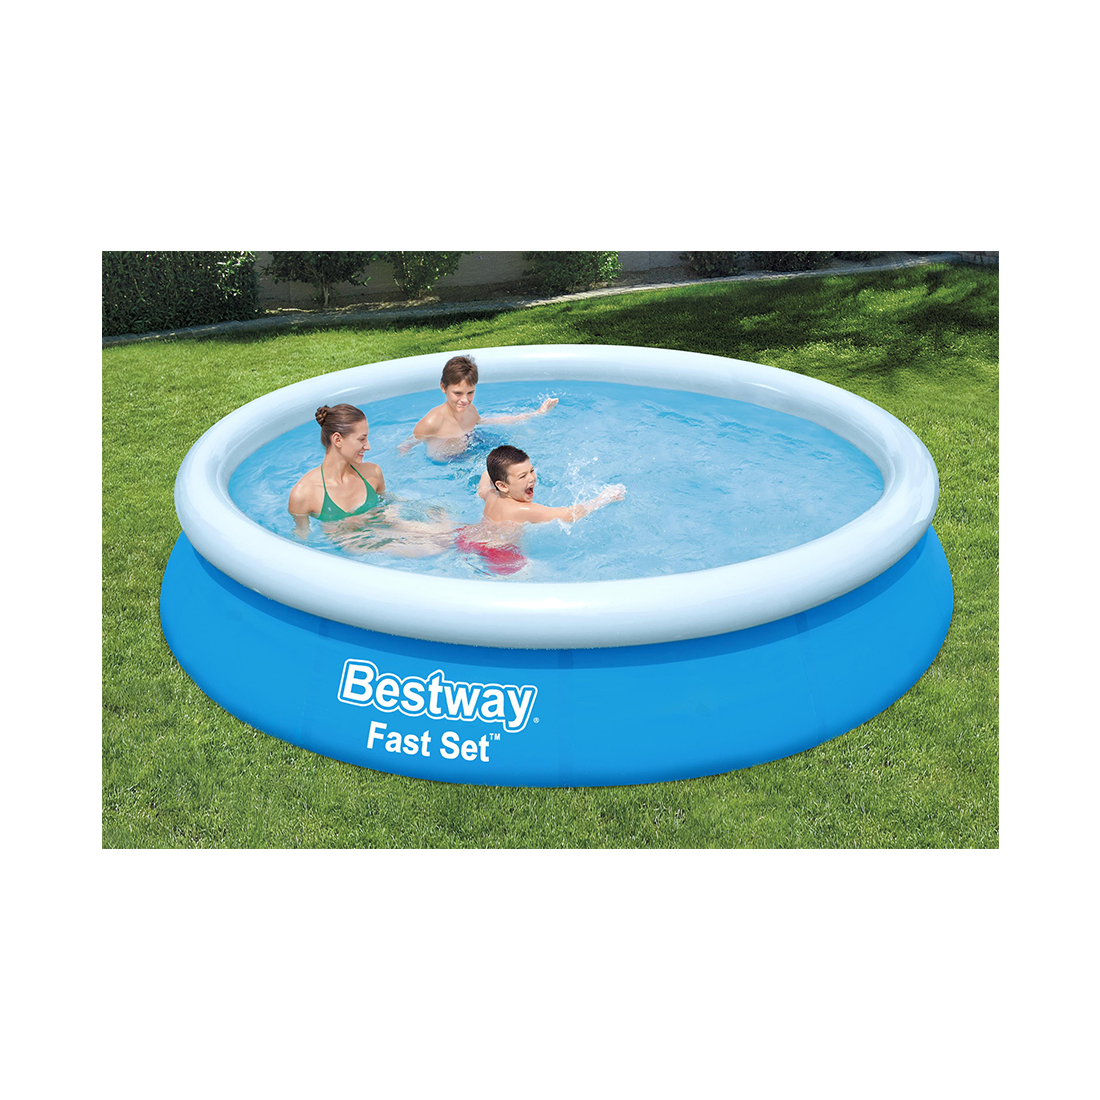 Надувной бассейн Bestway 57273